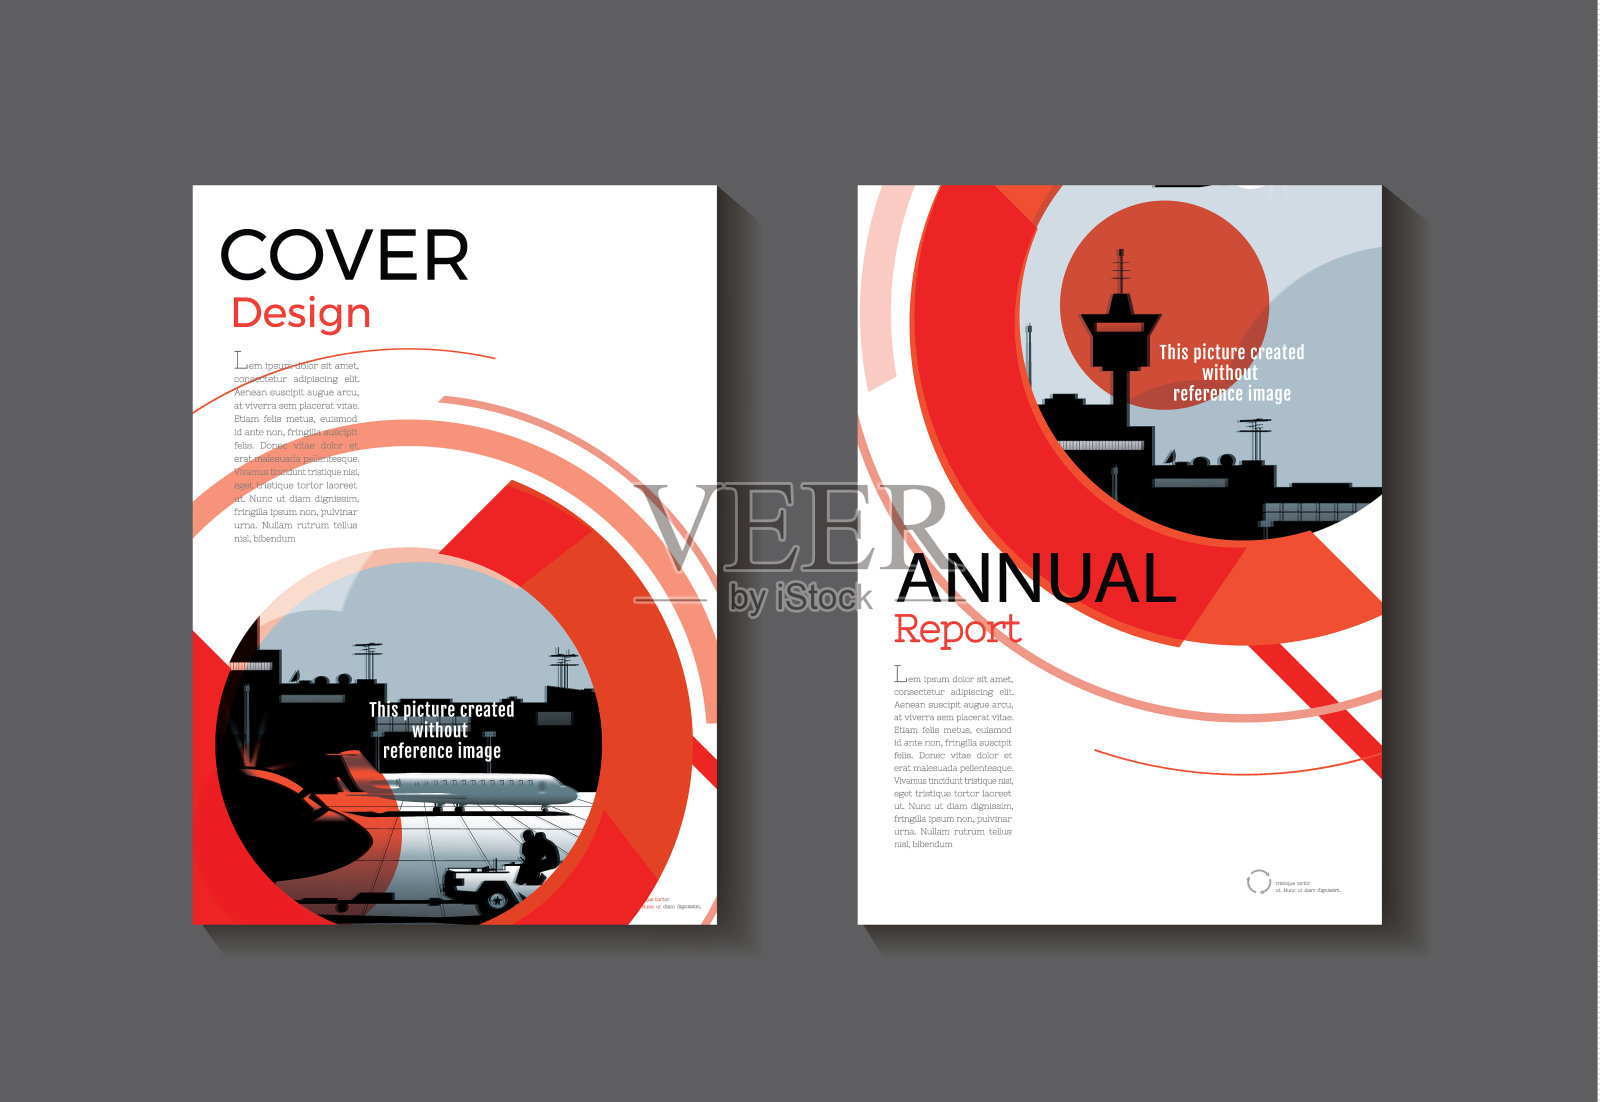 红圈抽象封面设计现代图书封面抽象小册子封面模板，年度报告，杂志和传单布局矢量a4设计模板素材